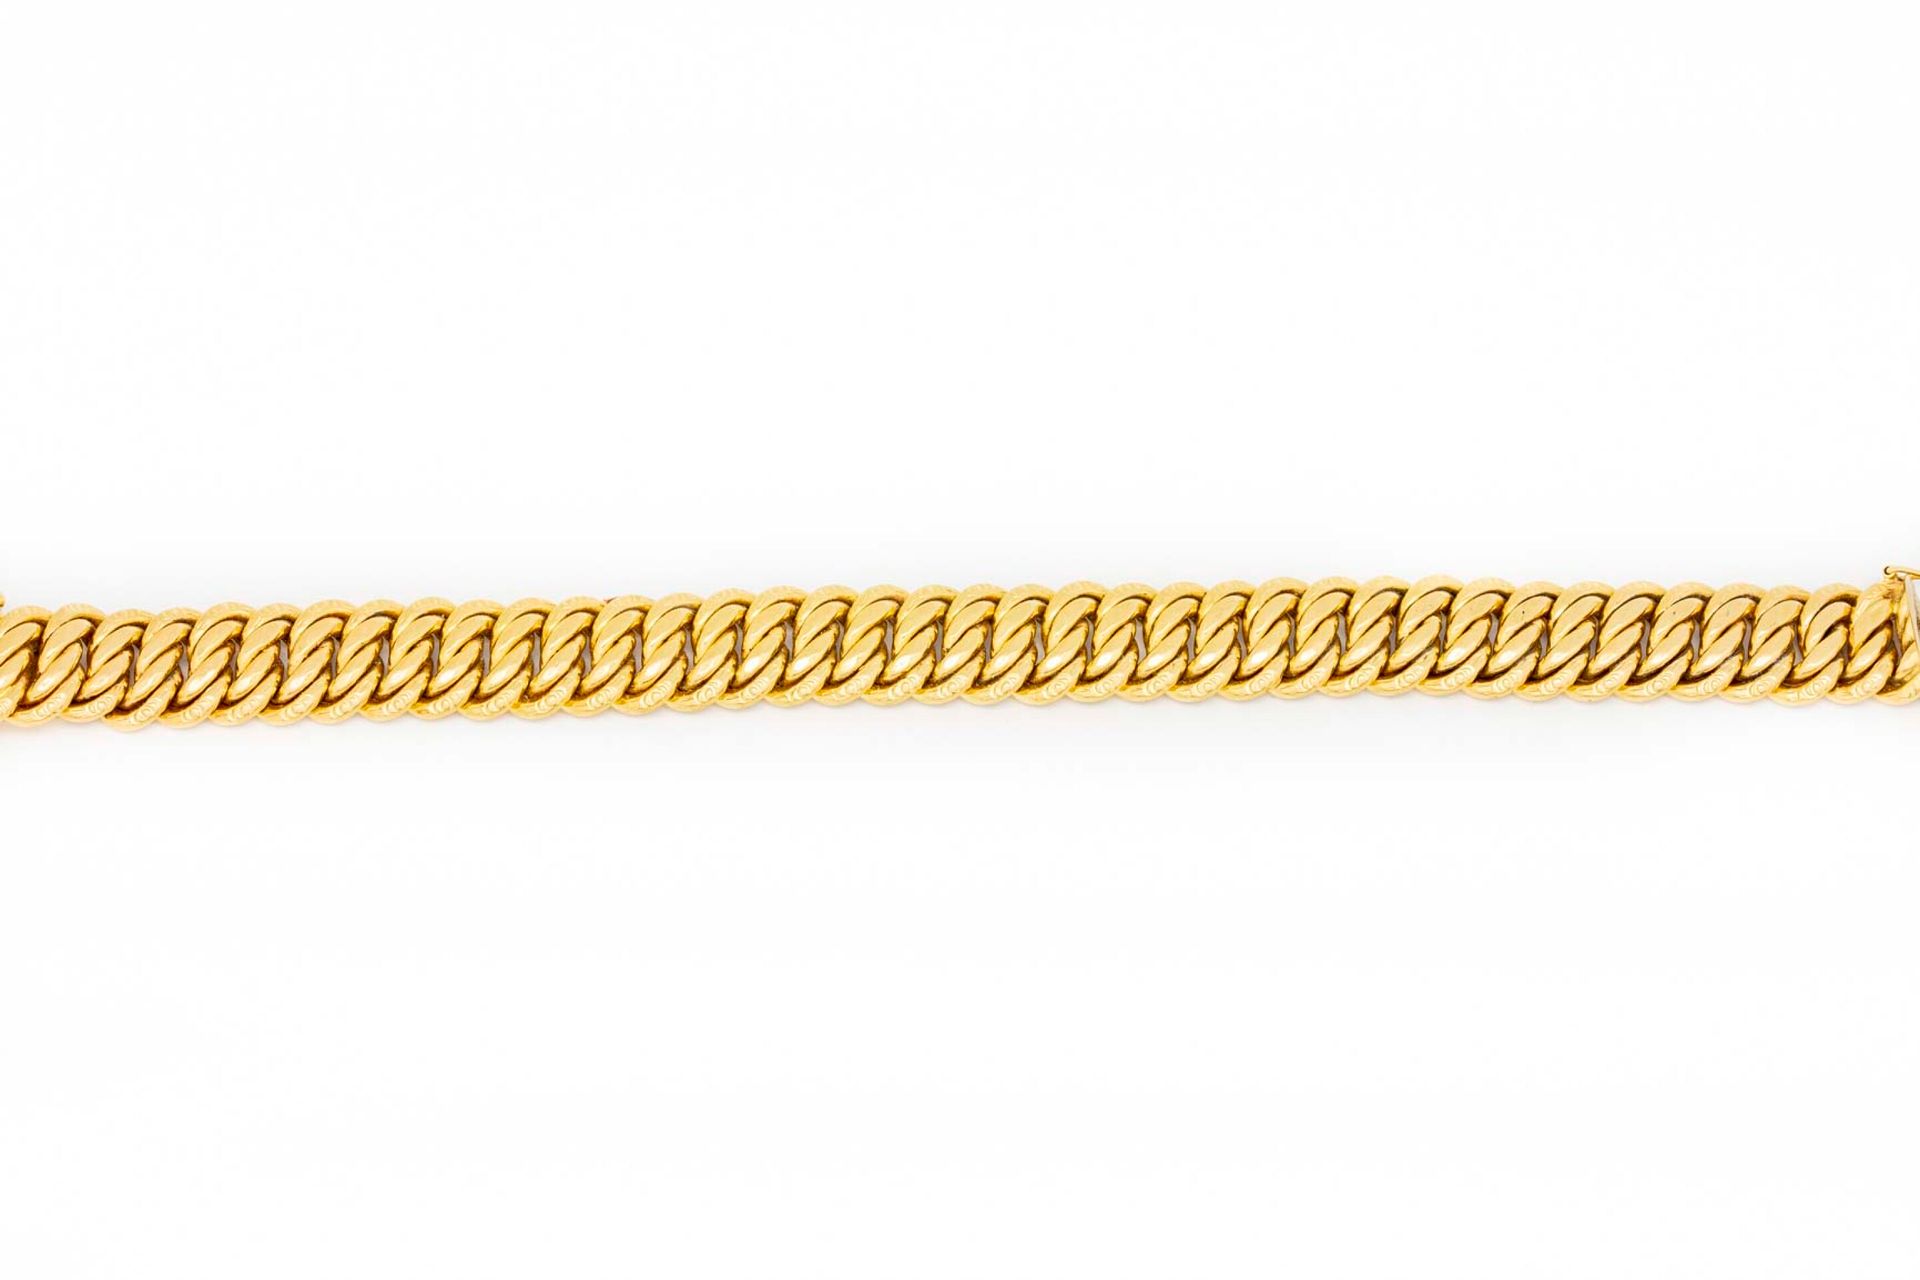 Null Bracciale in oro giallo con maglie articolate flessibili

Peso: 26,4 g.